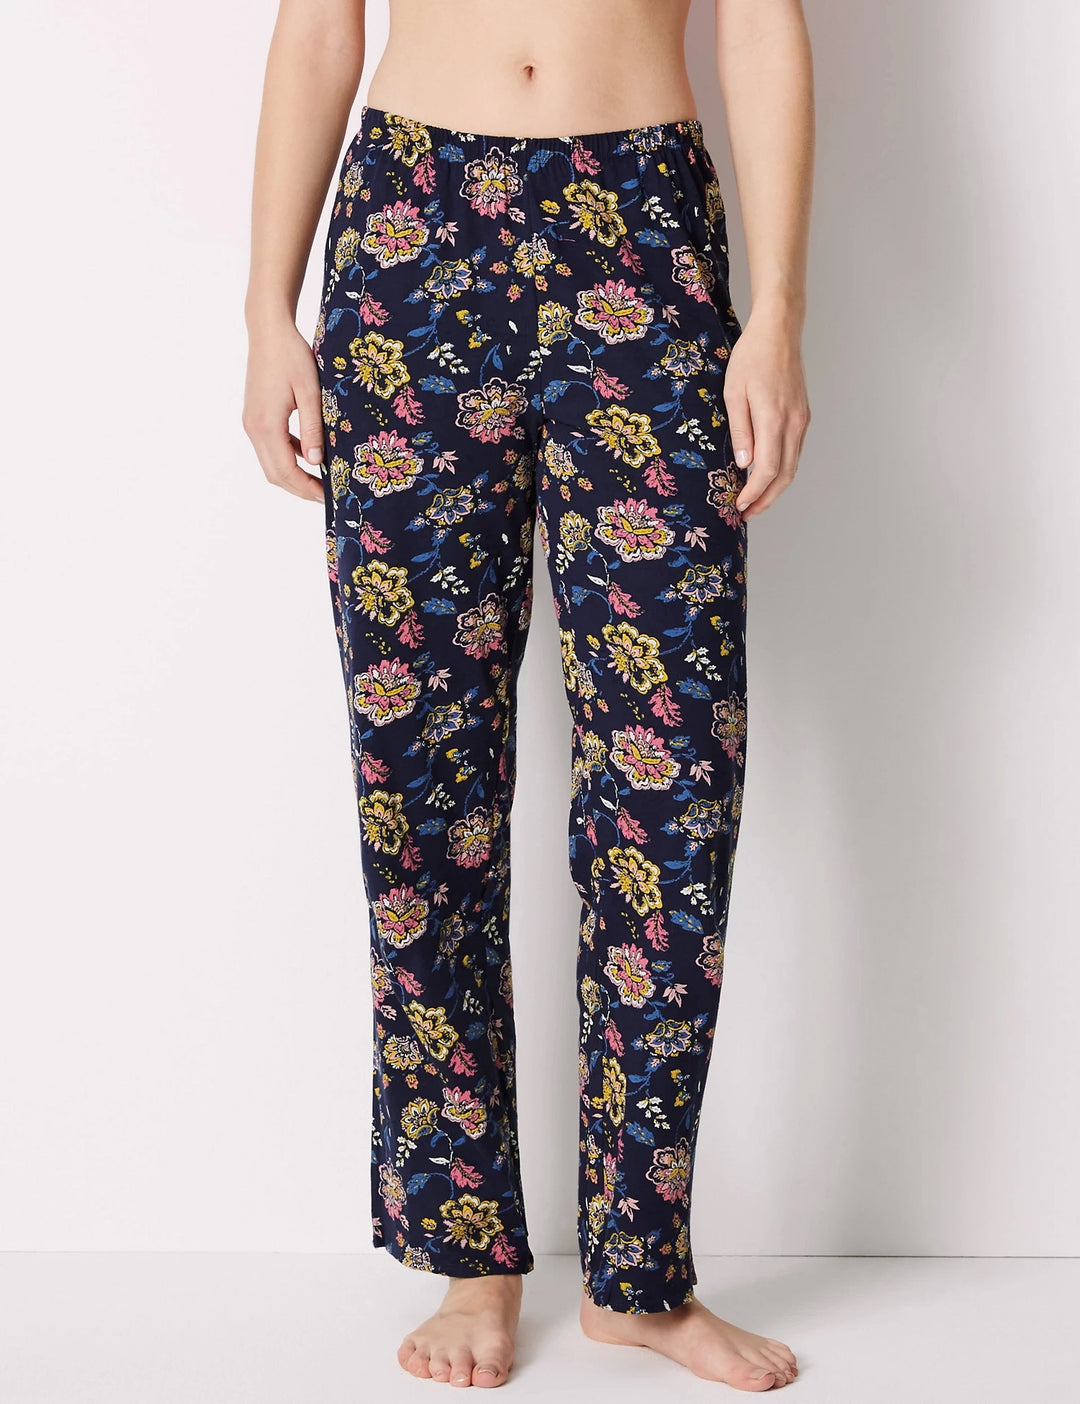 M&S Ladies Pajama Suit T37/4264F